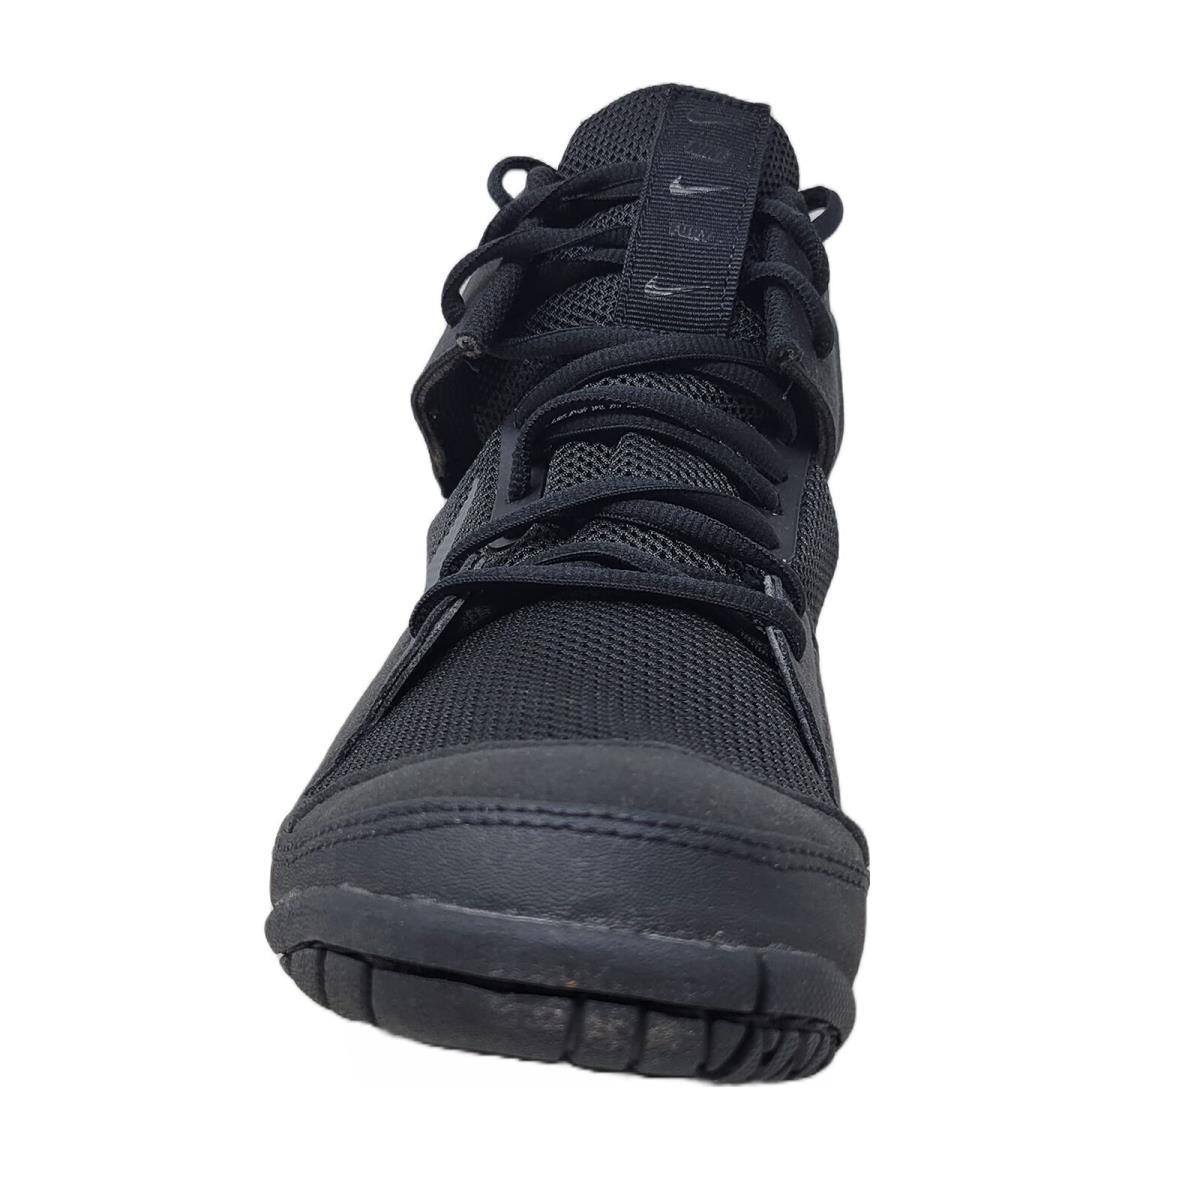 Nike Men`s Fury Wrestling Shoes AO2416 010 Black/dark Grey Size 10 - Black, Manufacturer: Black